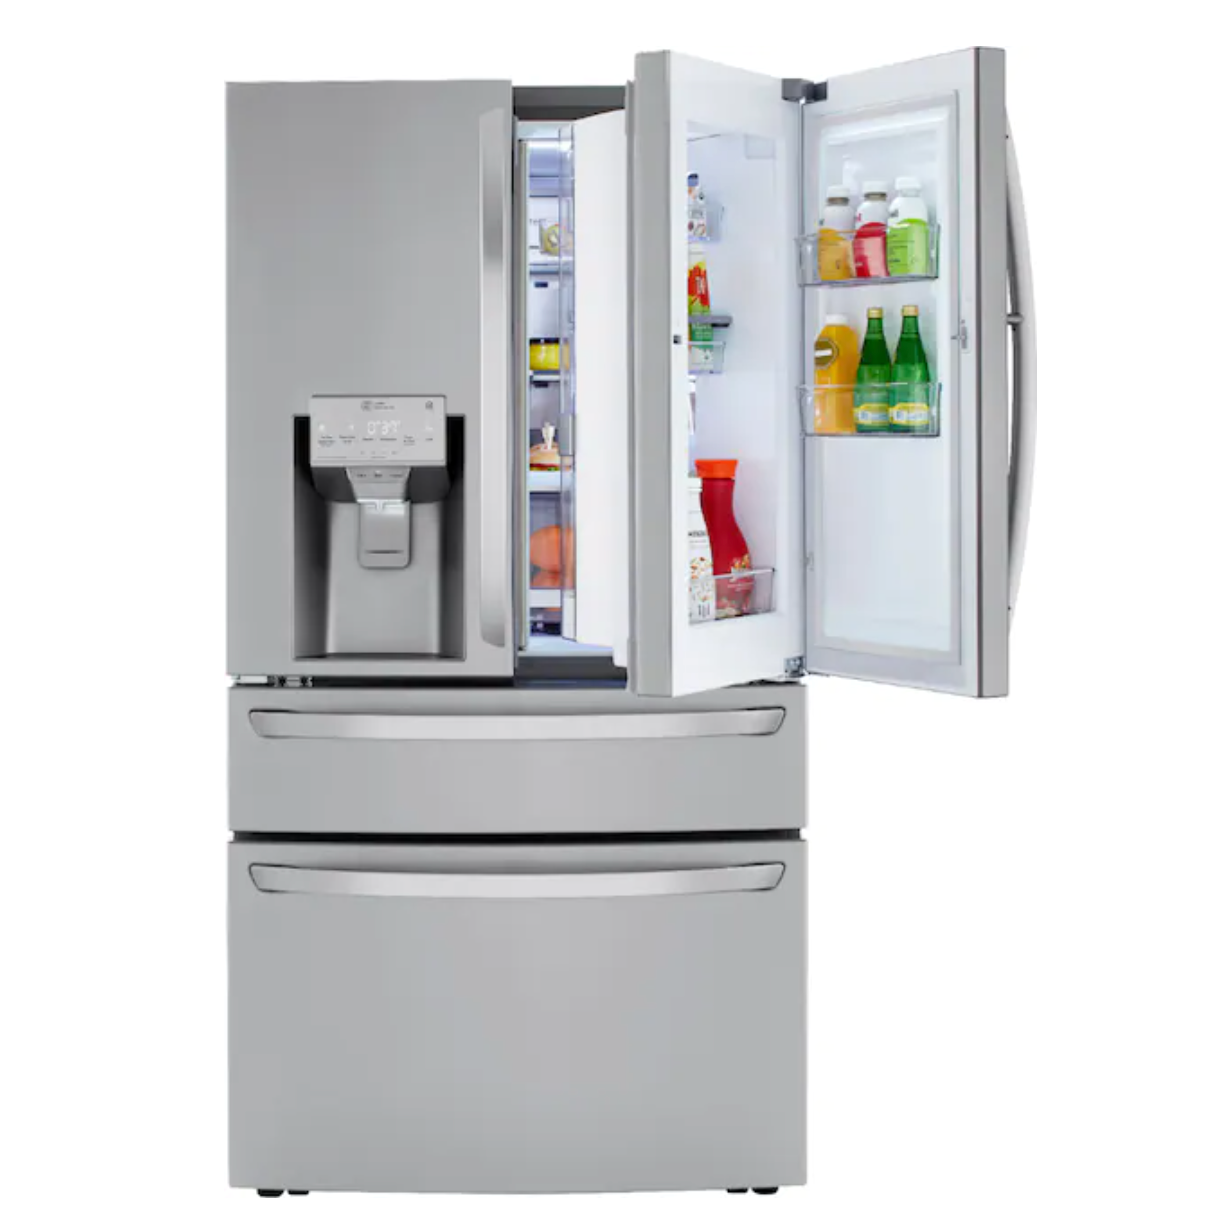 LG 4-Door French Door Counter-Depth Refrigerator